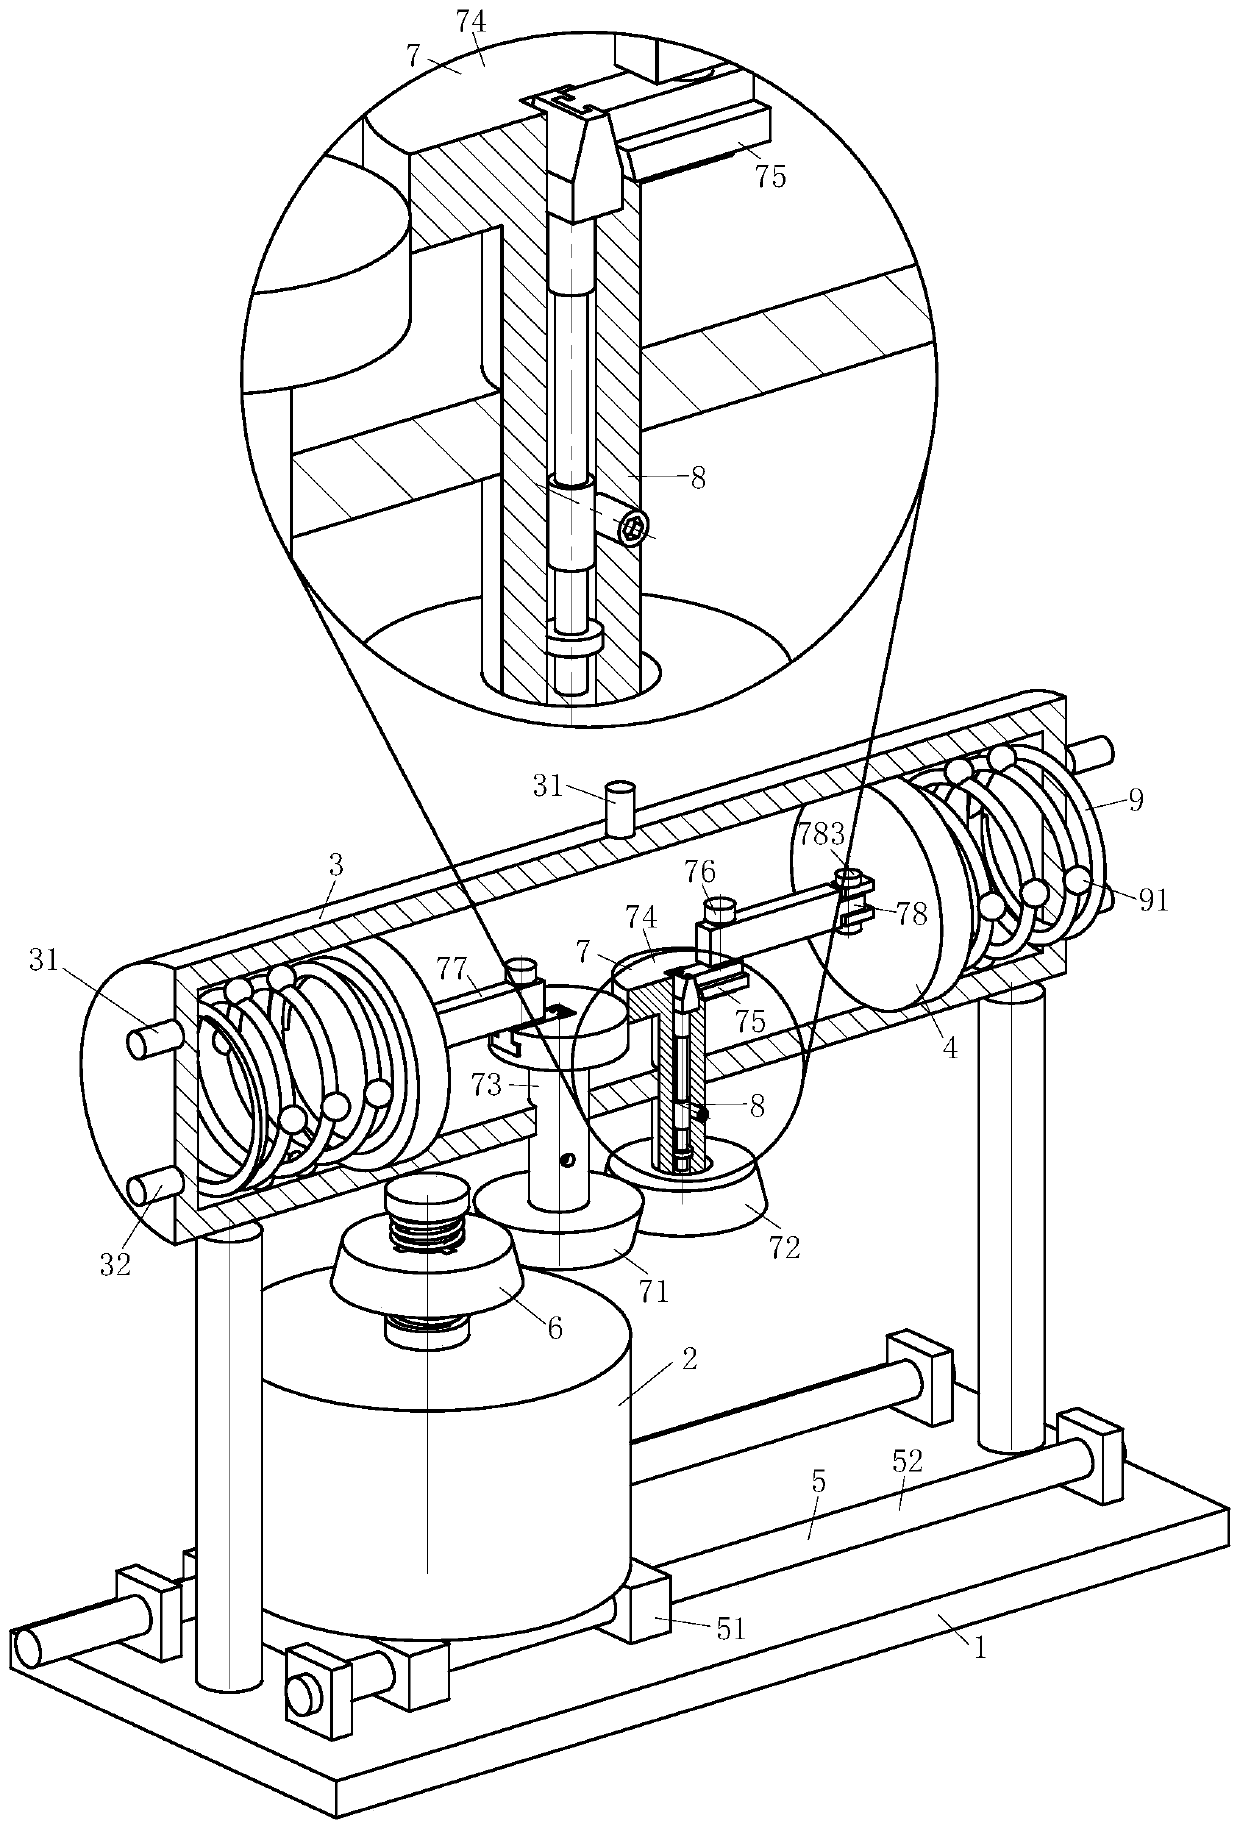 A variable capacity air conditioner compressor